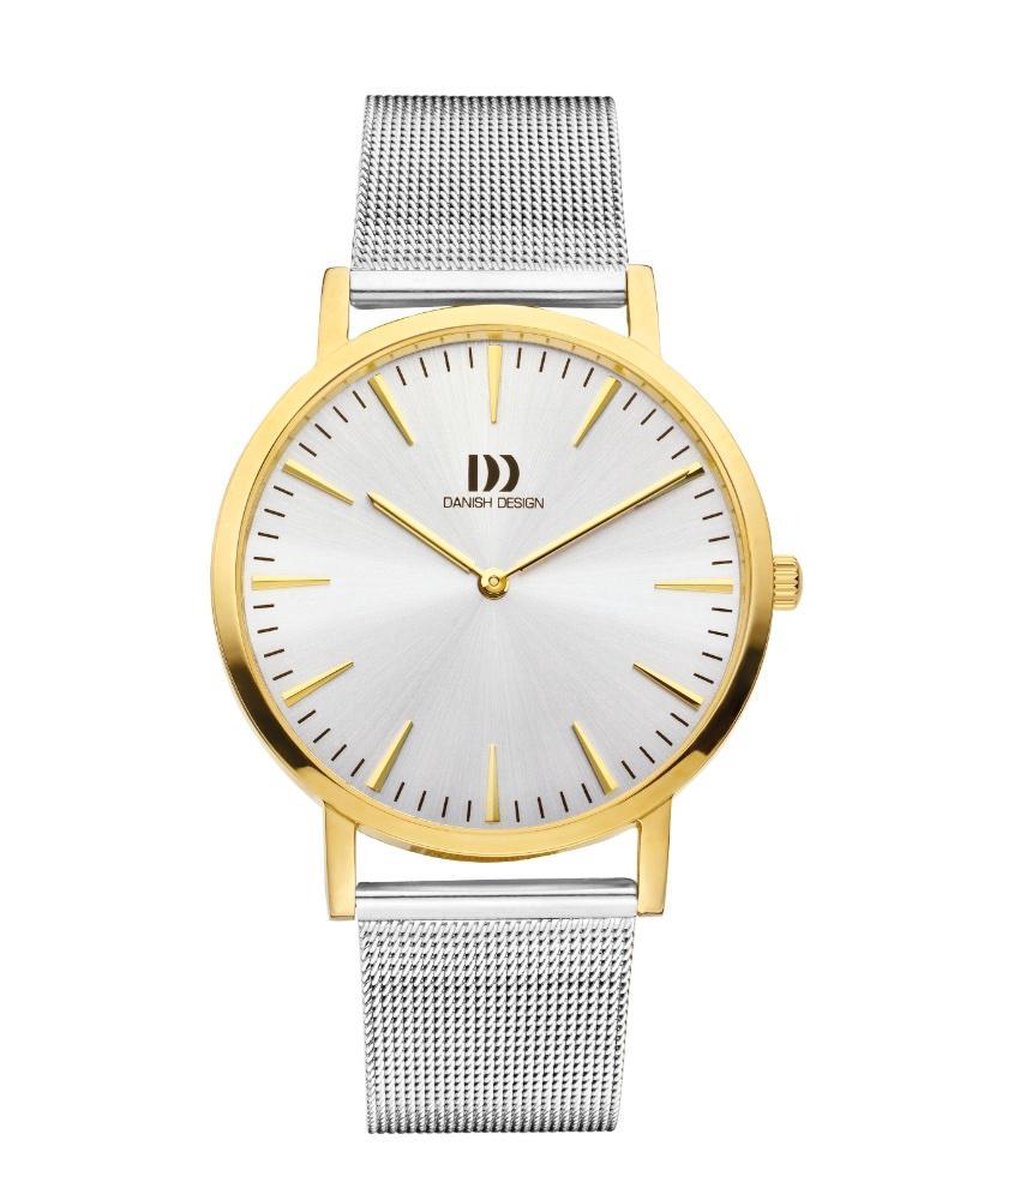 Danish Design IQ65Q1235 horloge heren - zilver - edelstaal doubl�